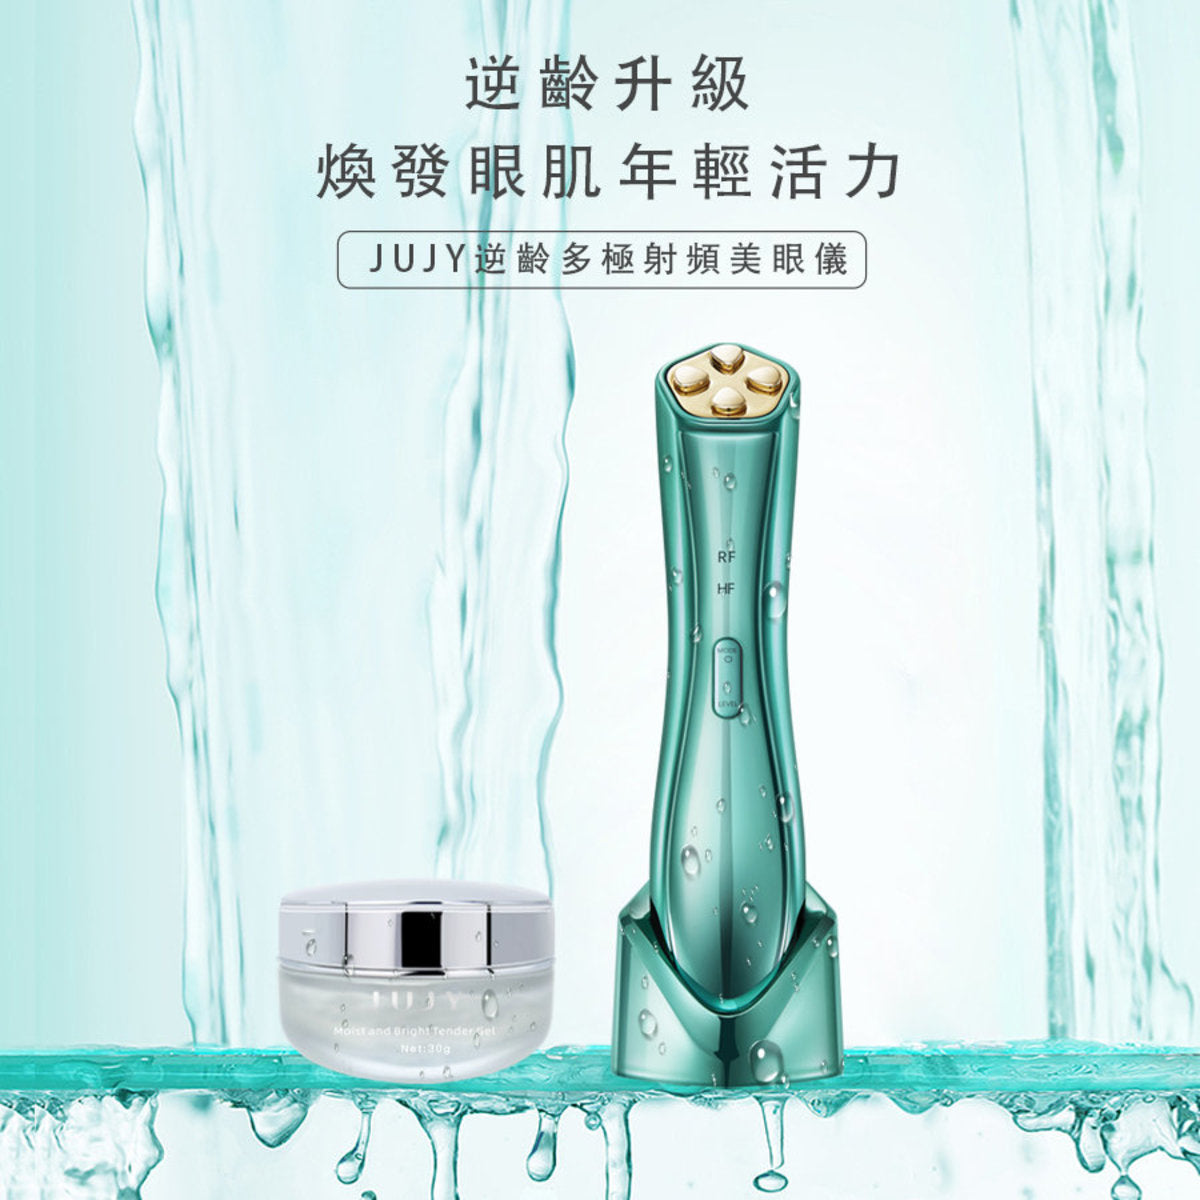 Jujy - Japan's JUJY RF anti-aging multi-polar RF radio frequency eye beauty device | Eye beauty device [Hong Kong licensed]